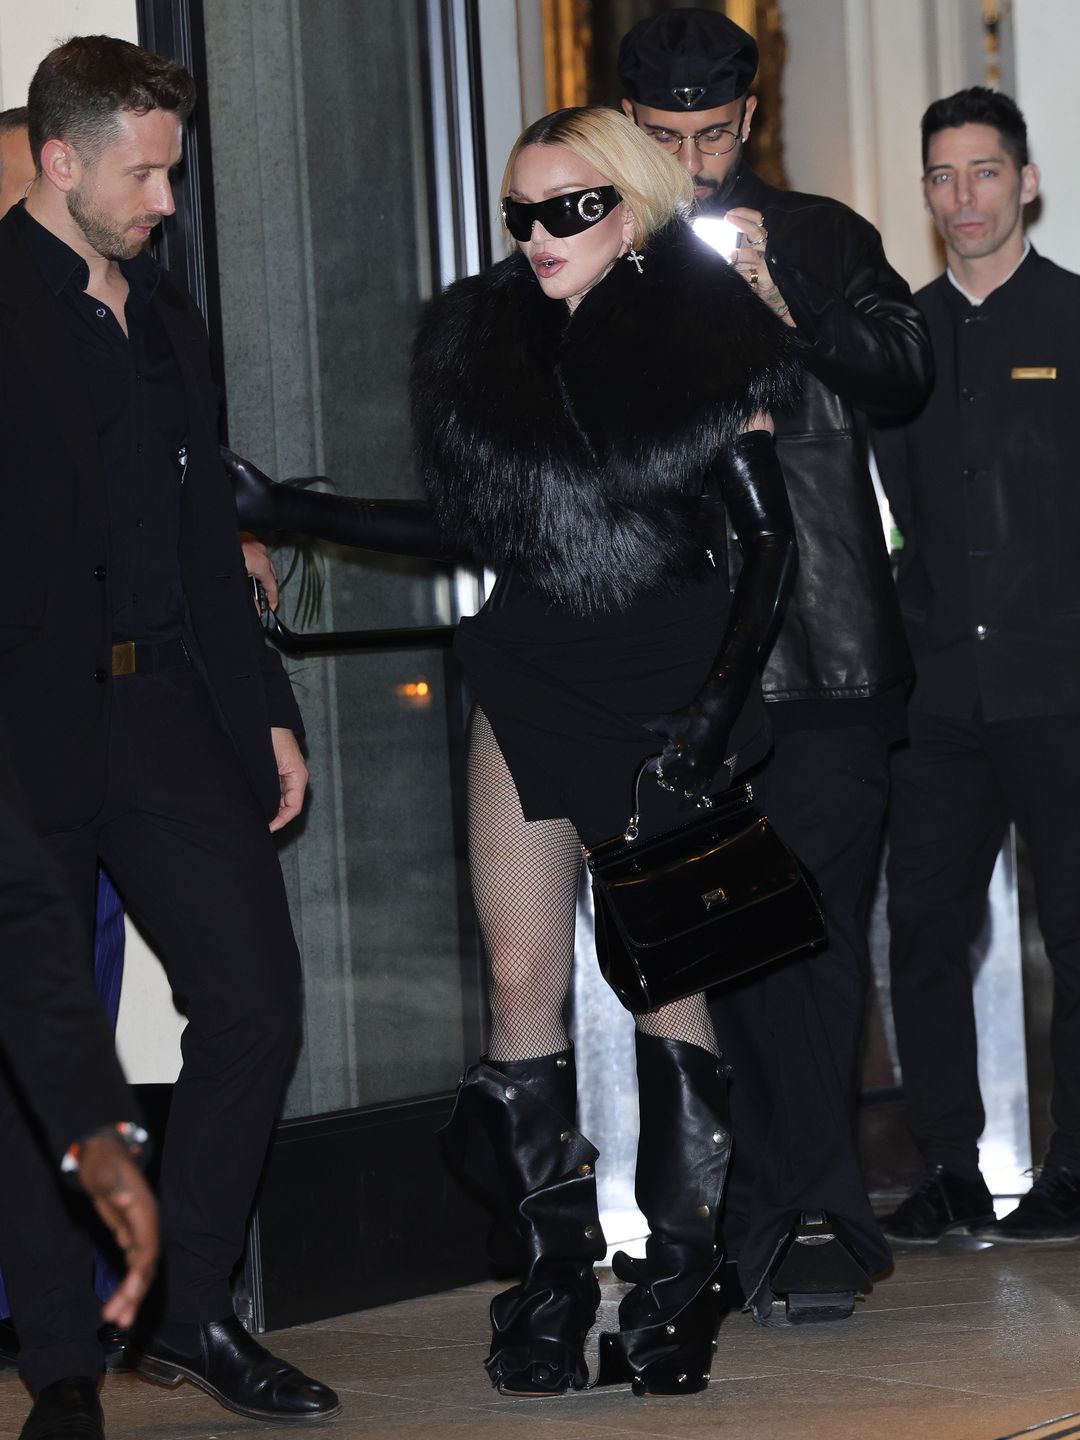 Madonna wearing black mini dress and fishnet tights